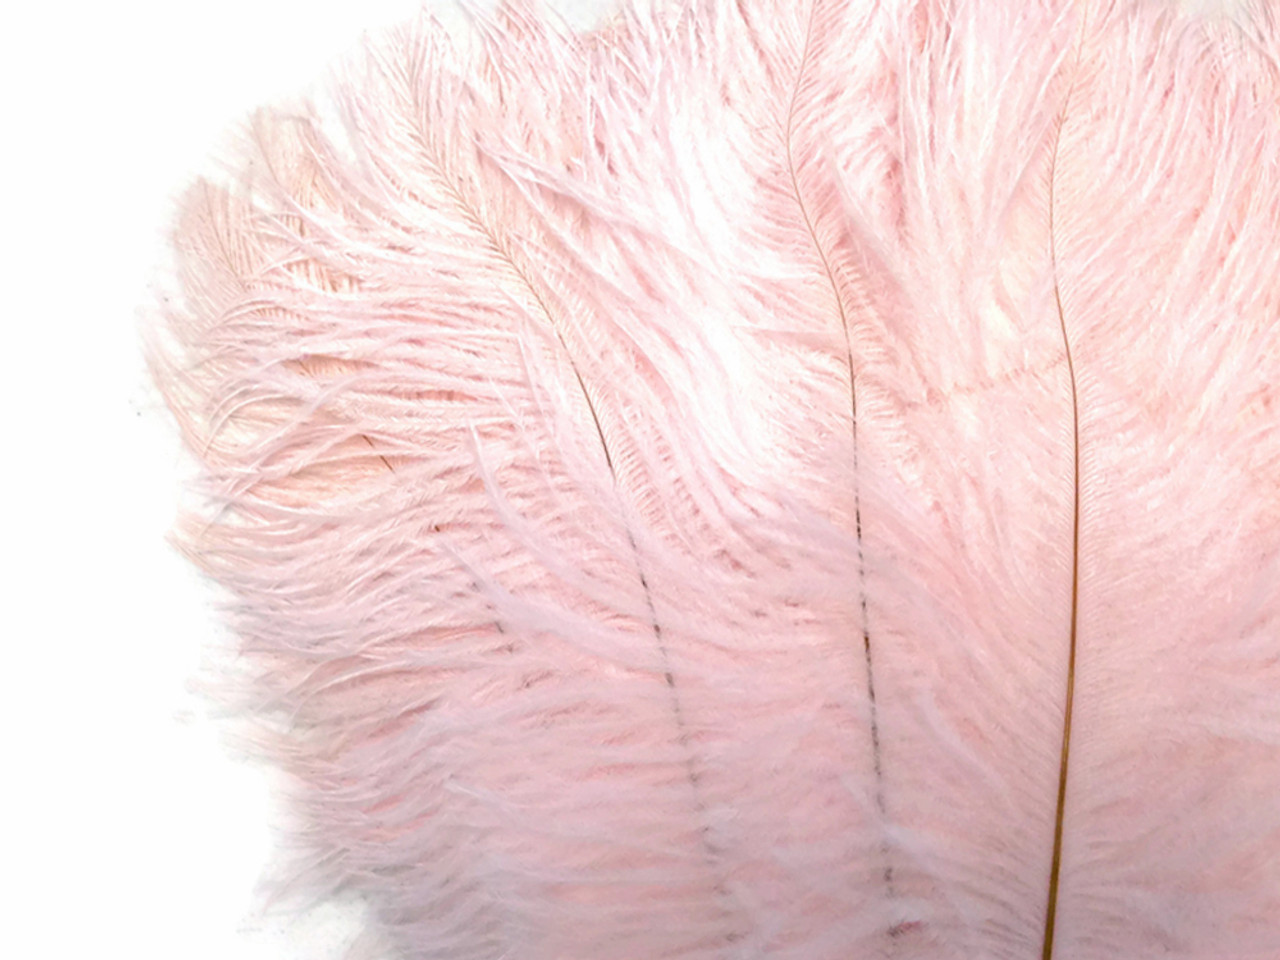 Blush Pink Ostrich Feathers 12-14 inches 100 Pieces Dozen Blush